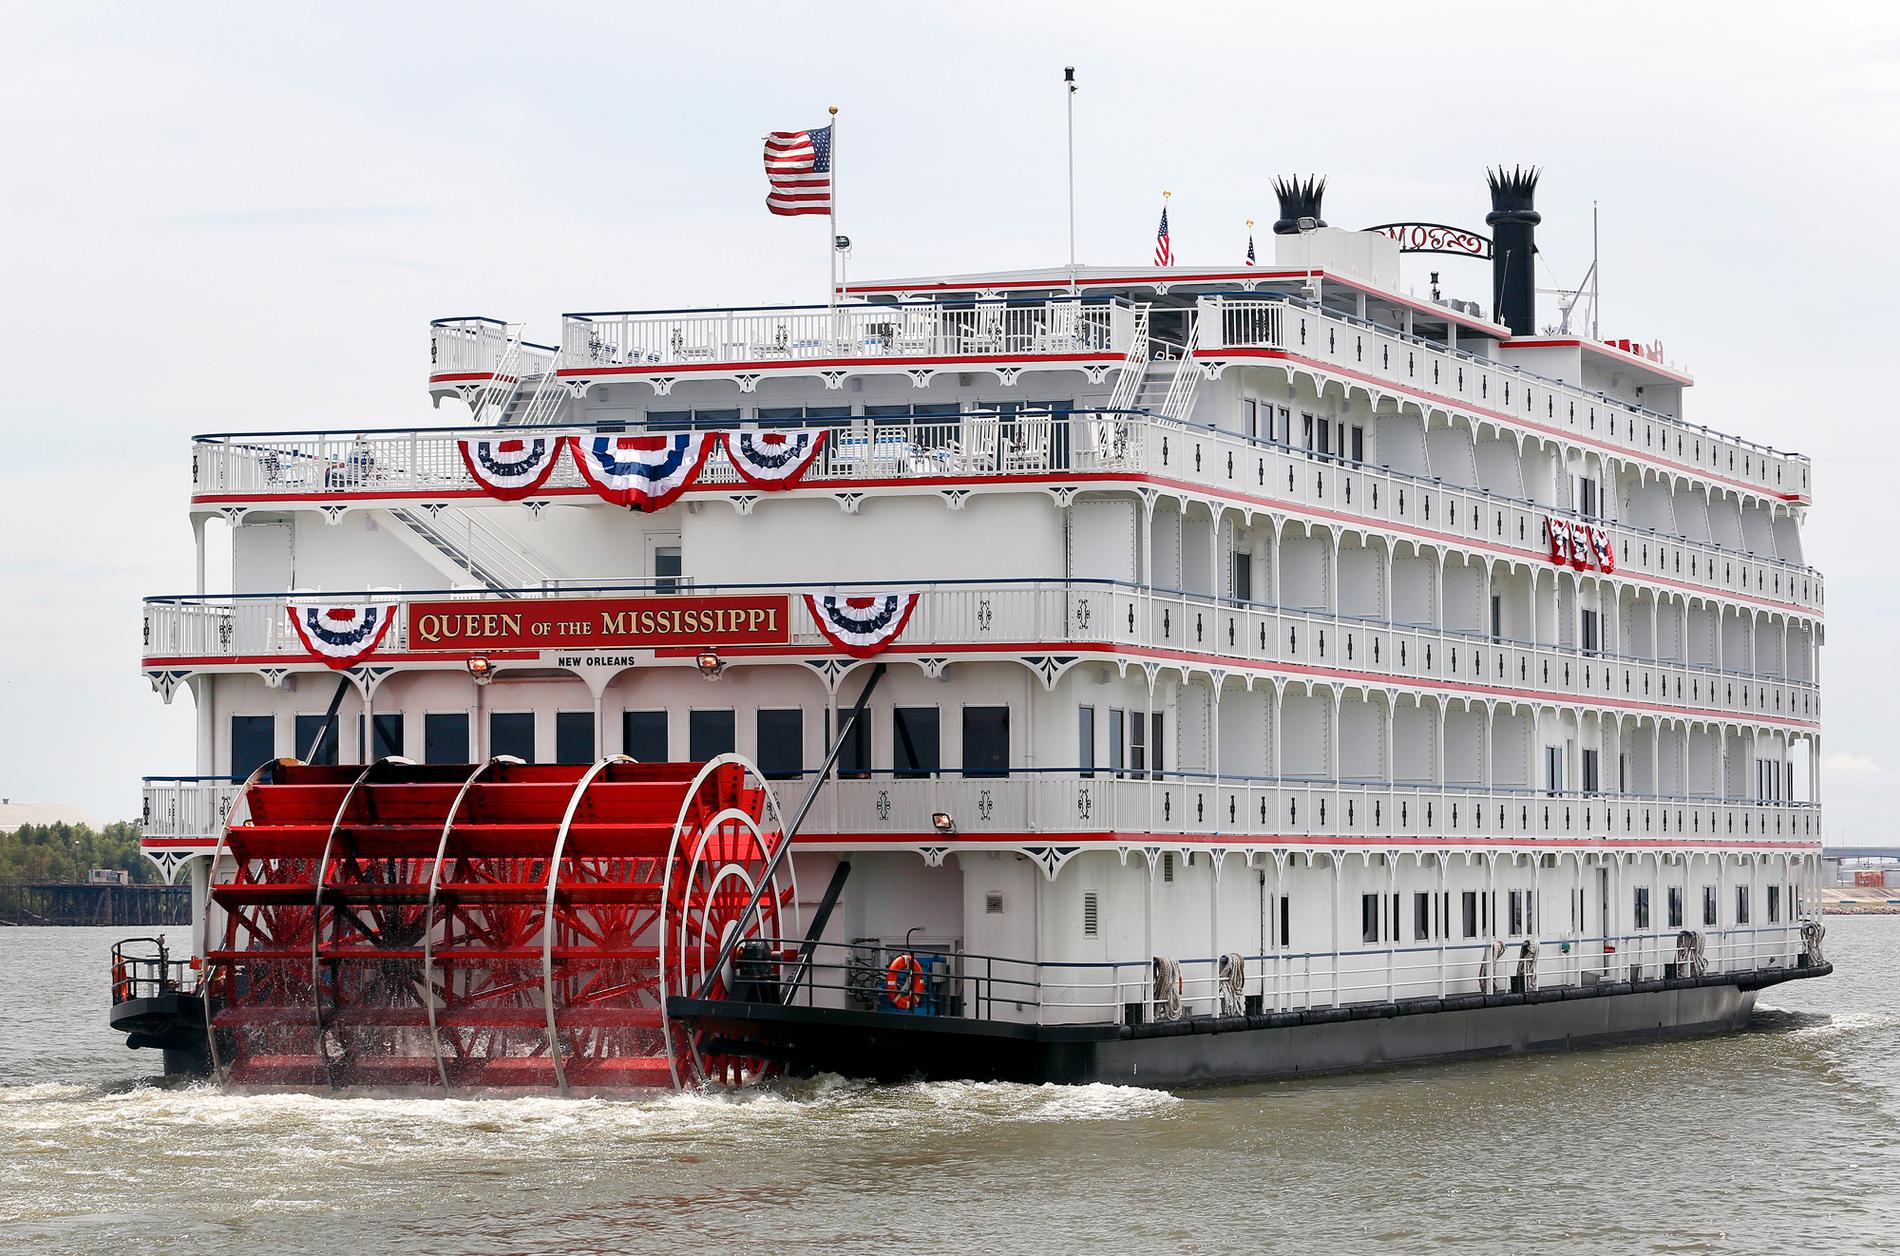 Queen of the Mississippi är en äkta hjulångare, den första som byggt på 20 år och en kopia av de ångare som trafikerat floden i århundraden.